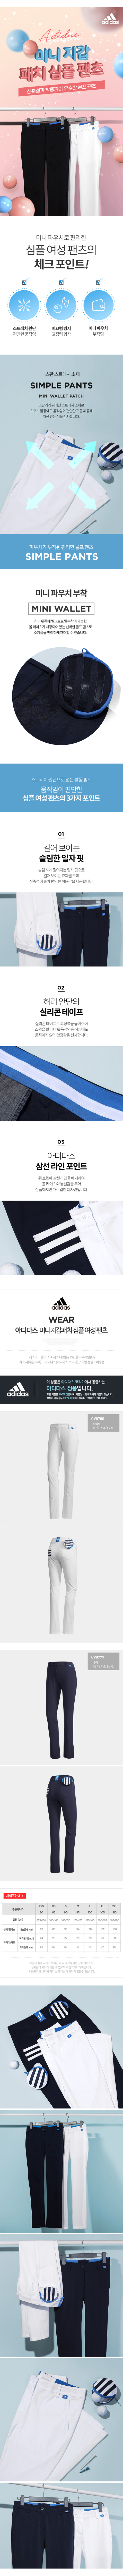 adidas_wallet_simple_pants_20.jpg